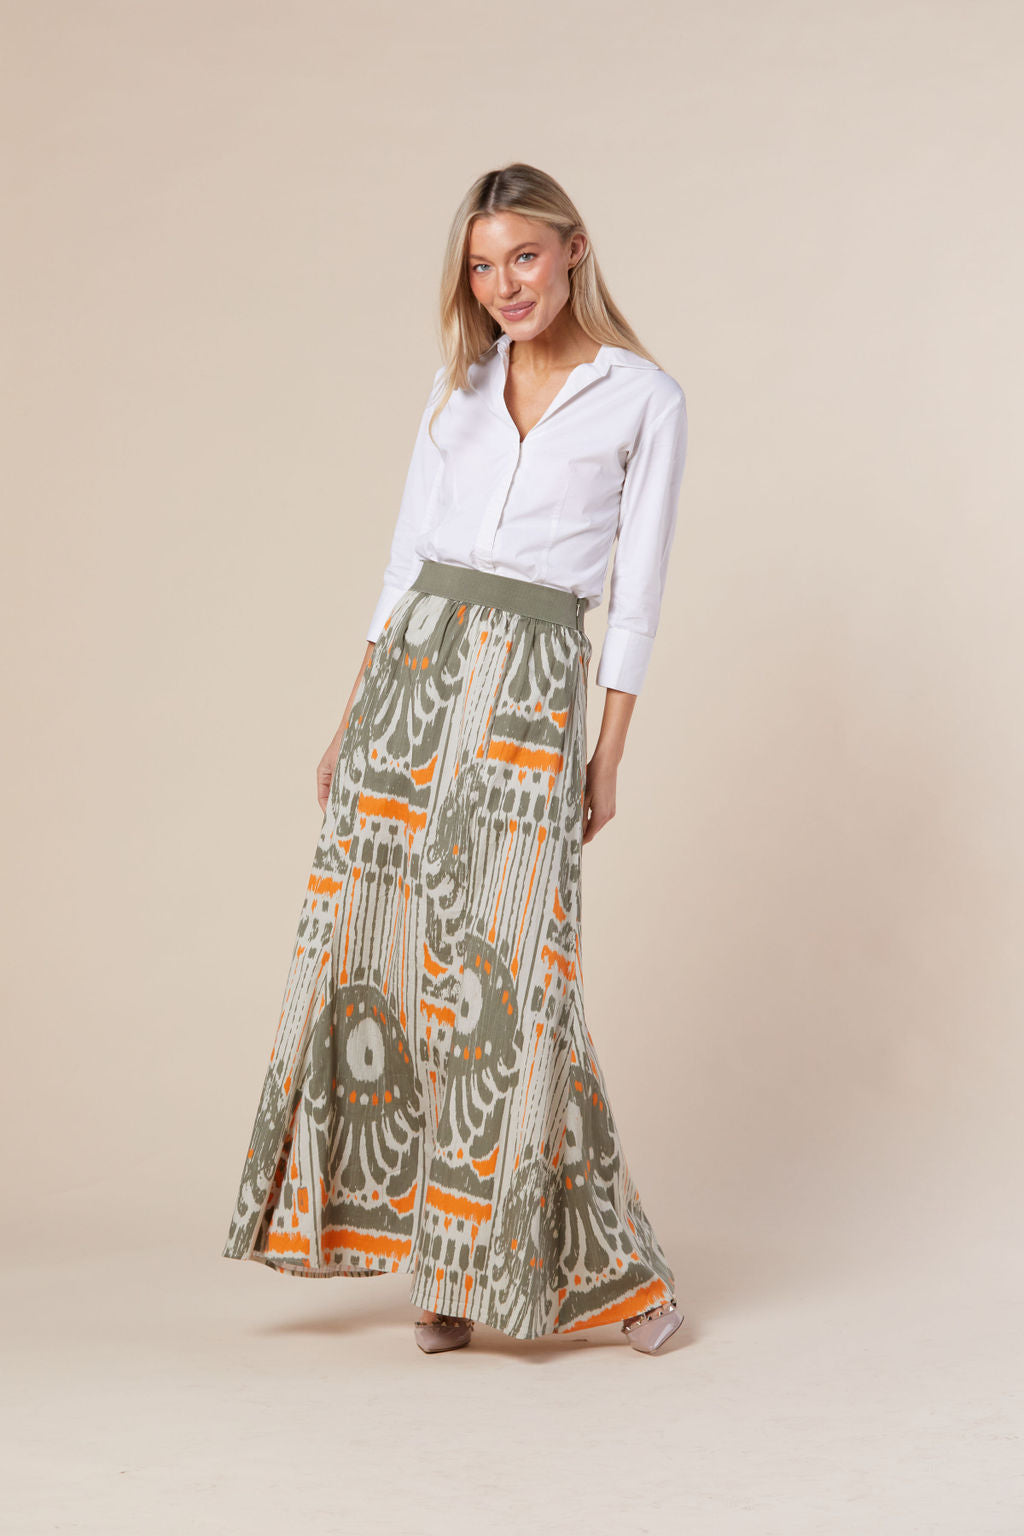 Allegra Skirt in Latte + Orange Moroccan Ikat